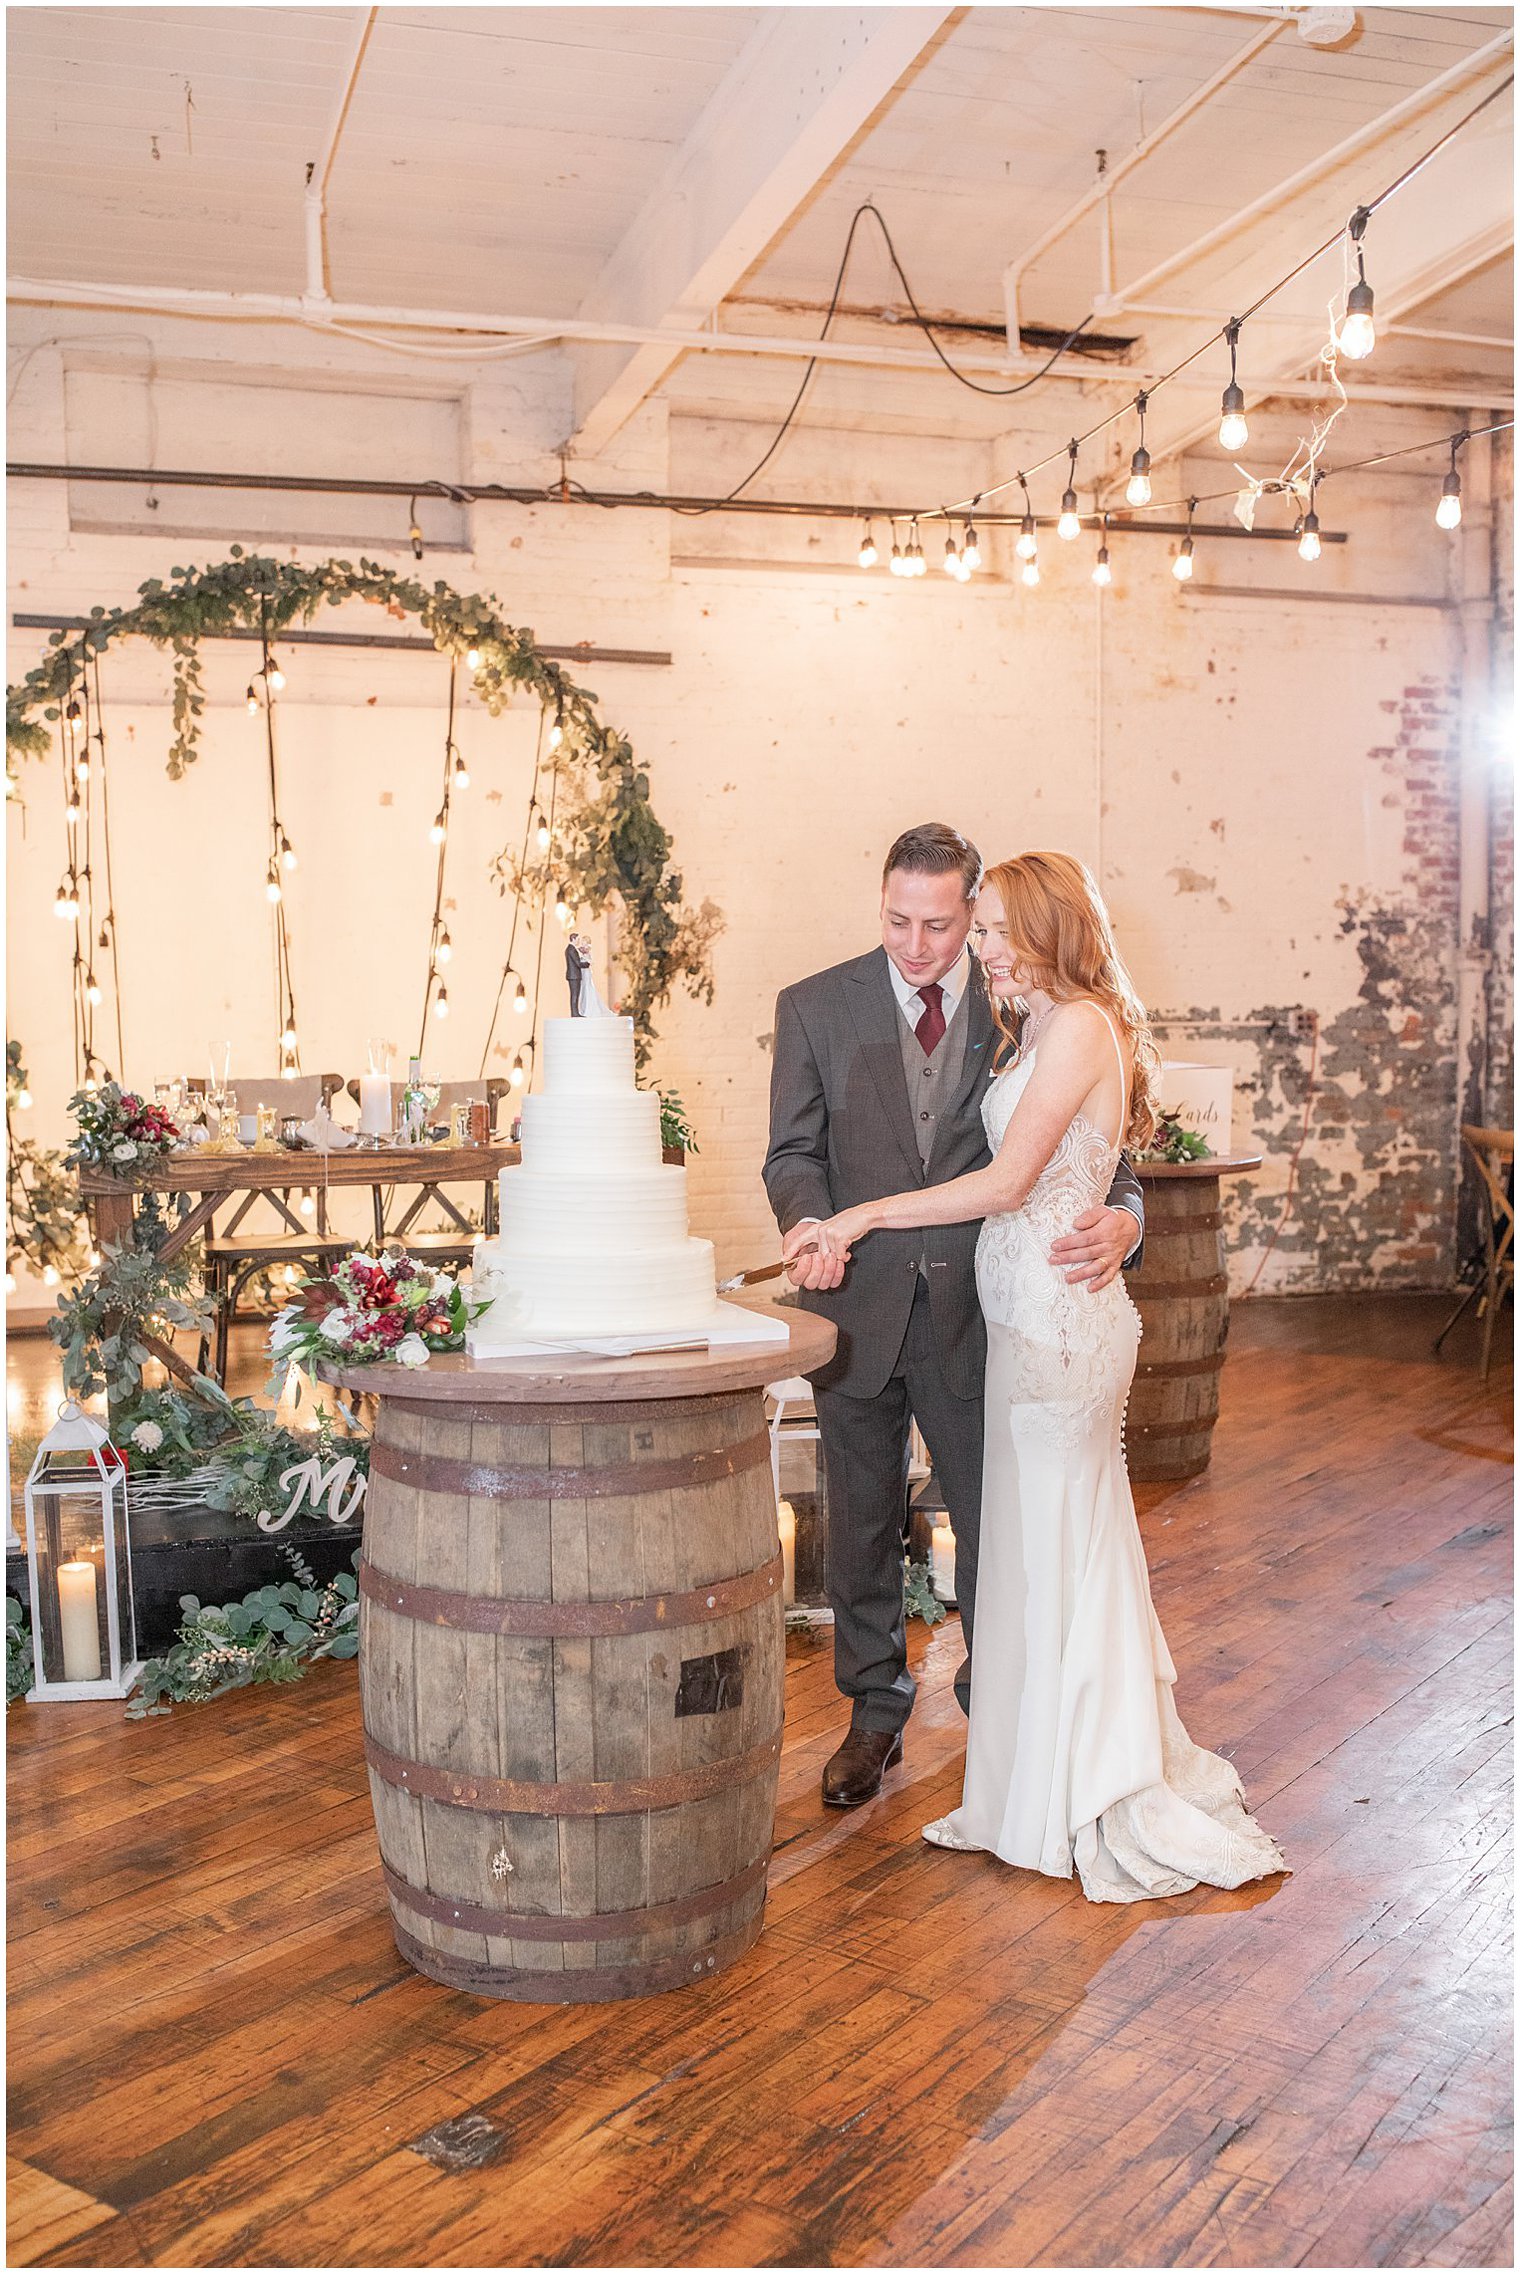 newlyweds cut wedding cake resting on wooden barrel 